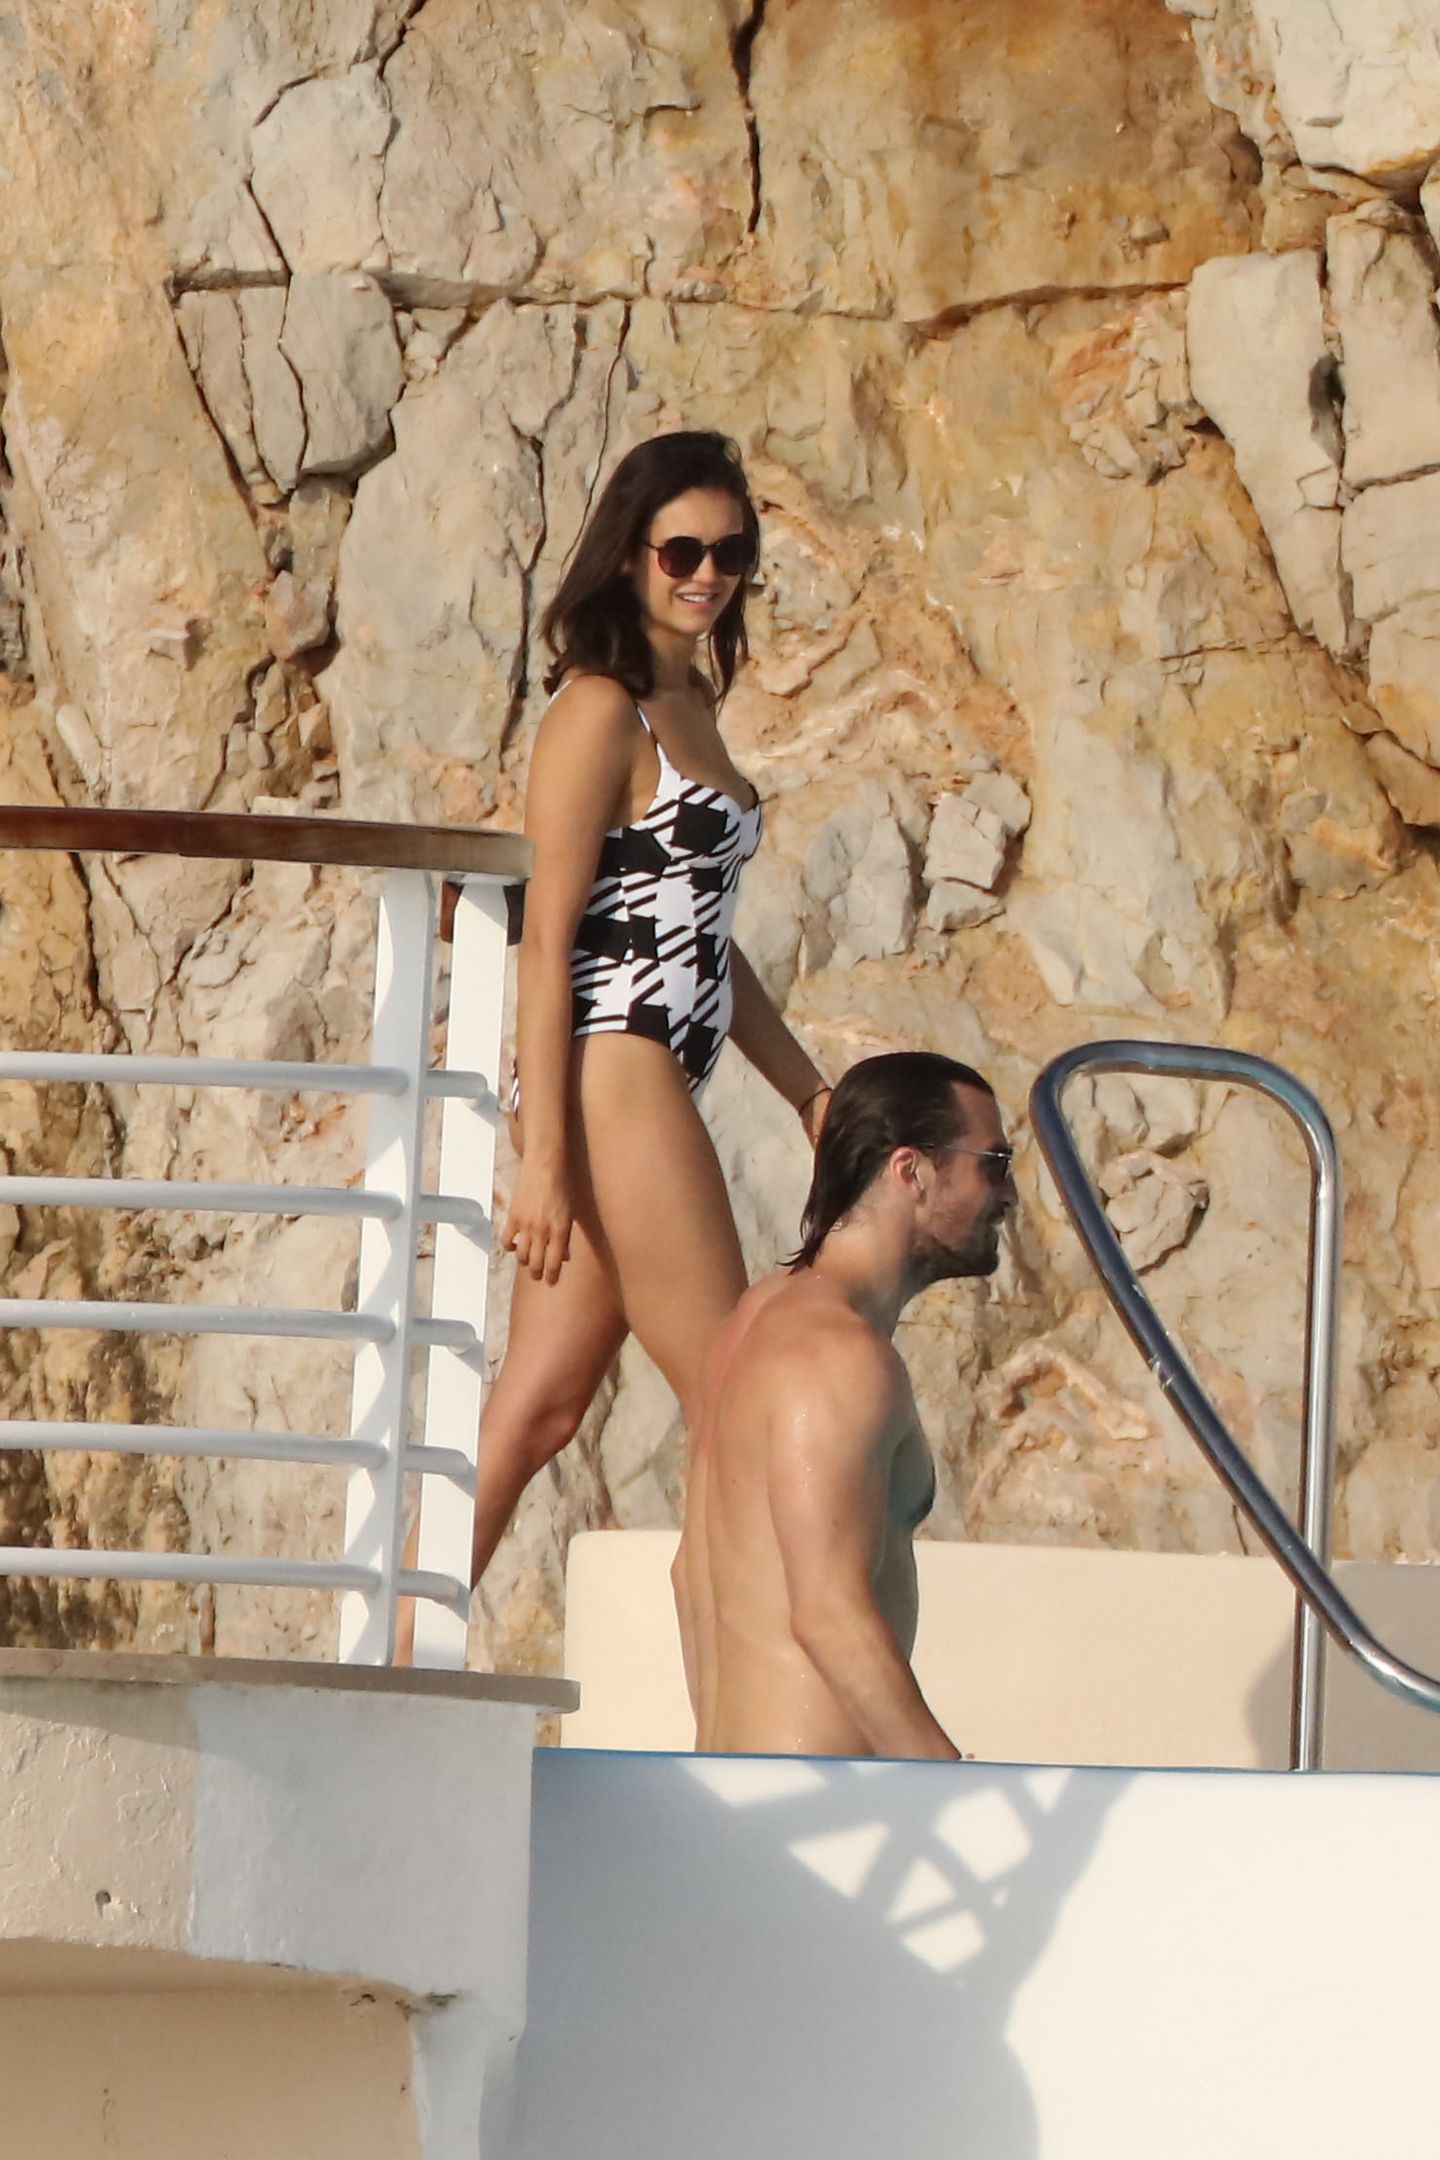 Nina Dobrev spotted in Bikini